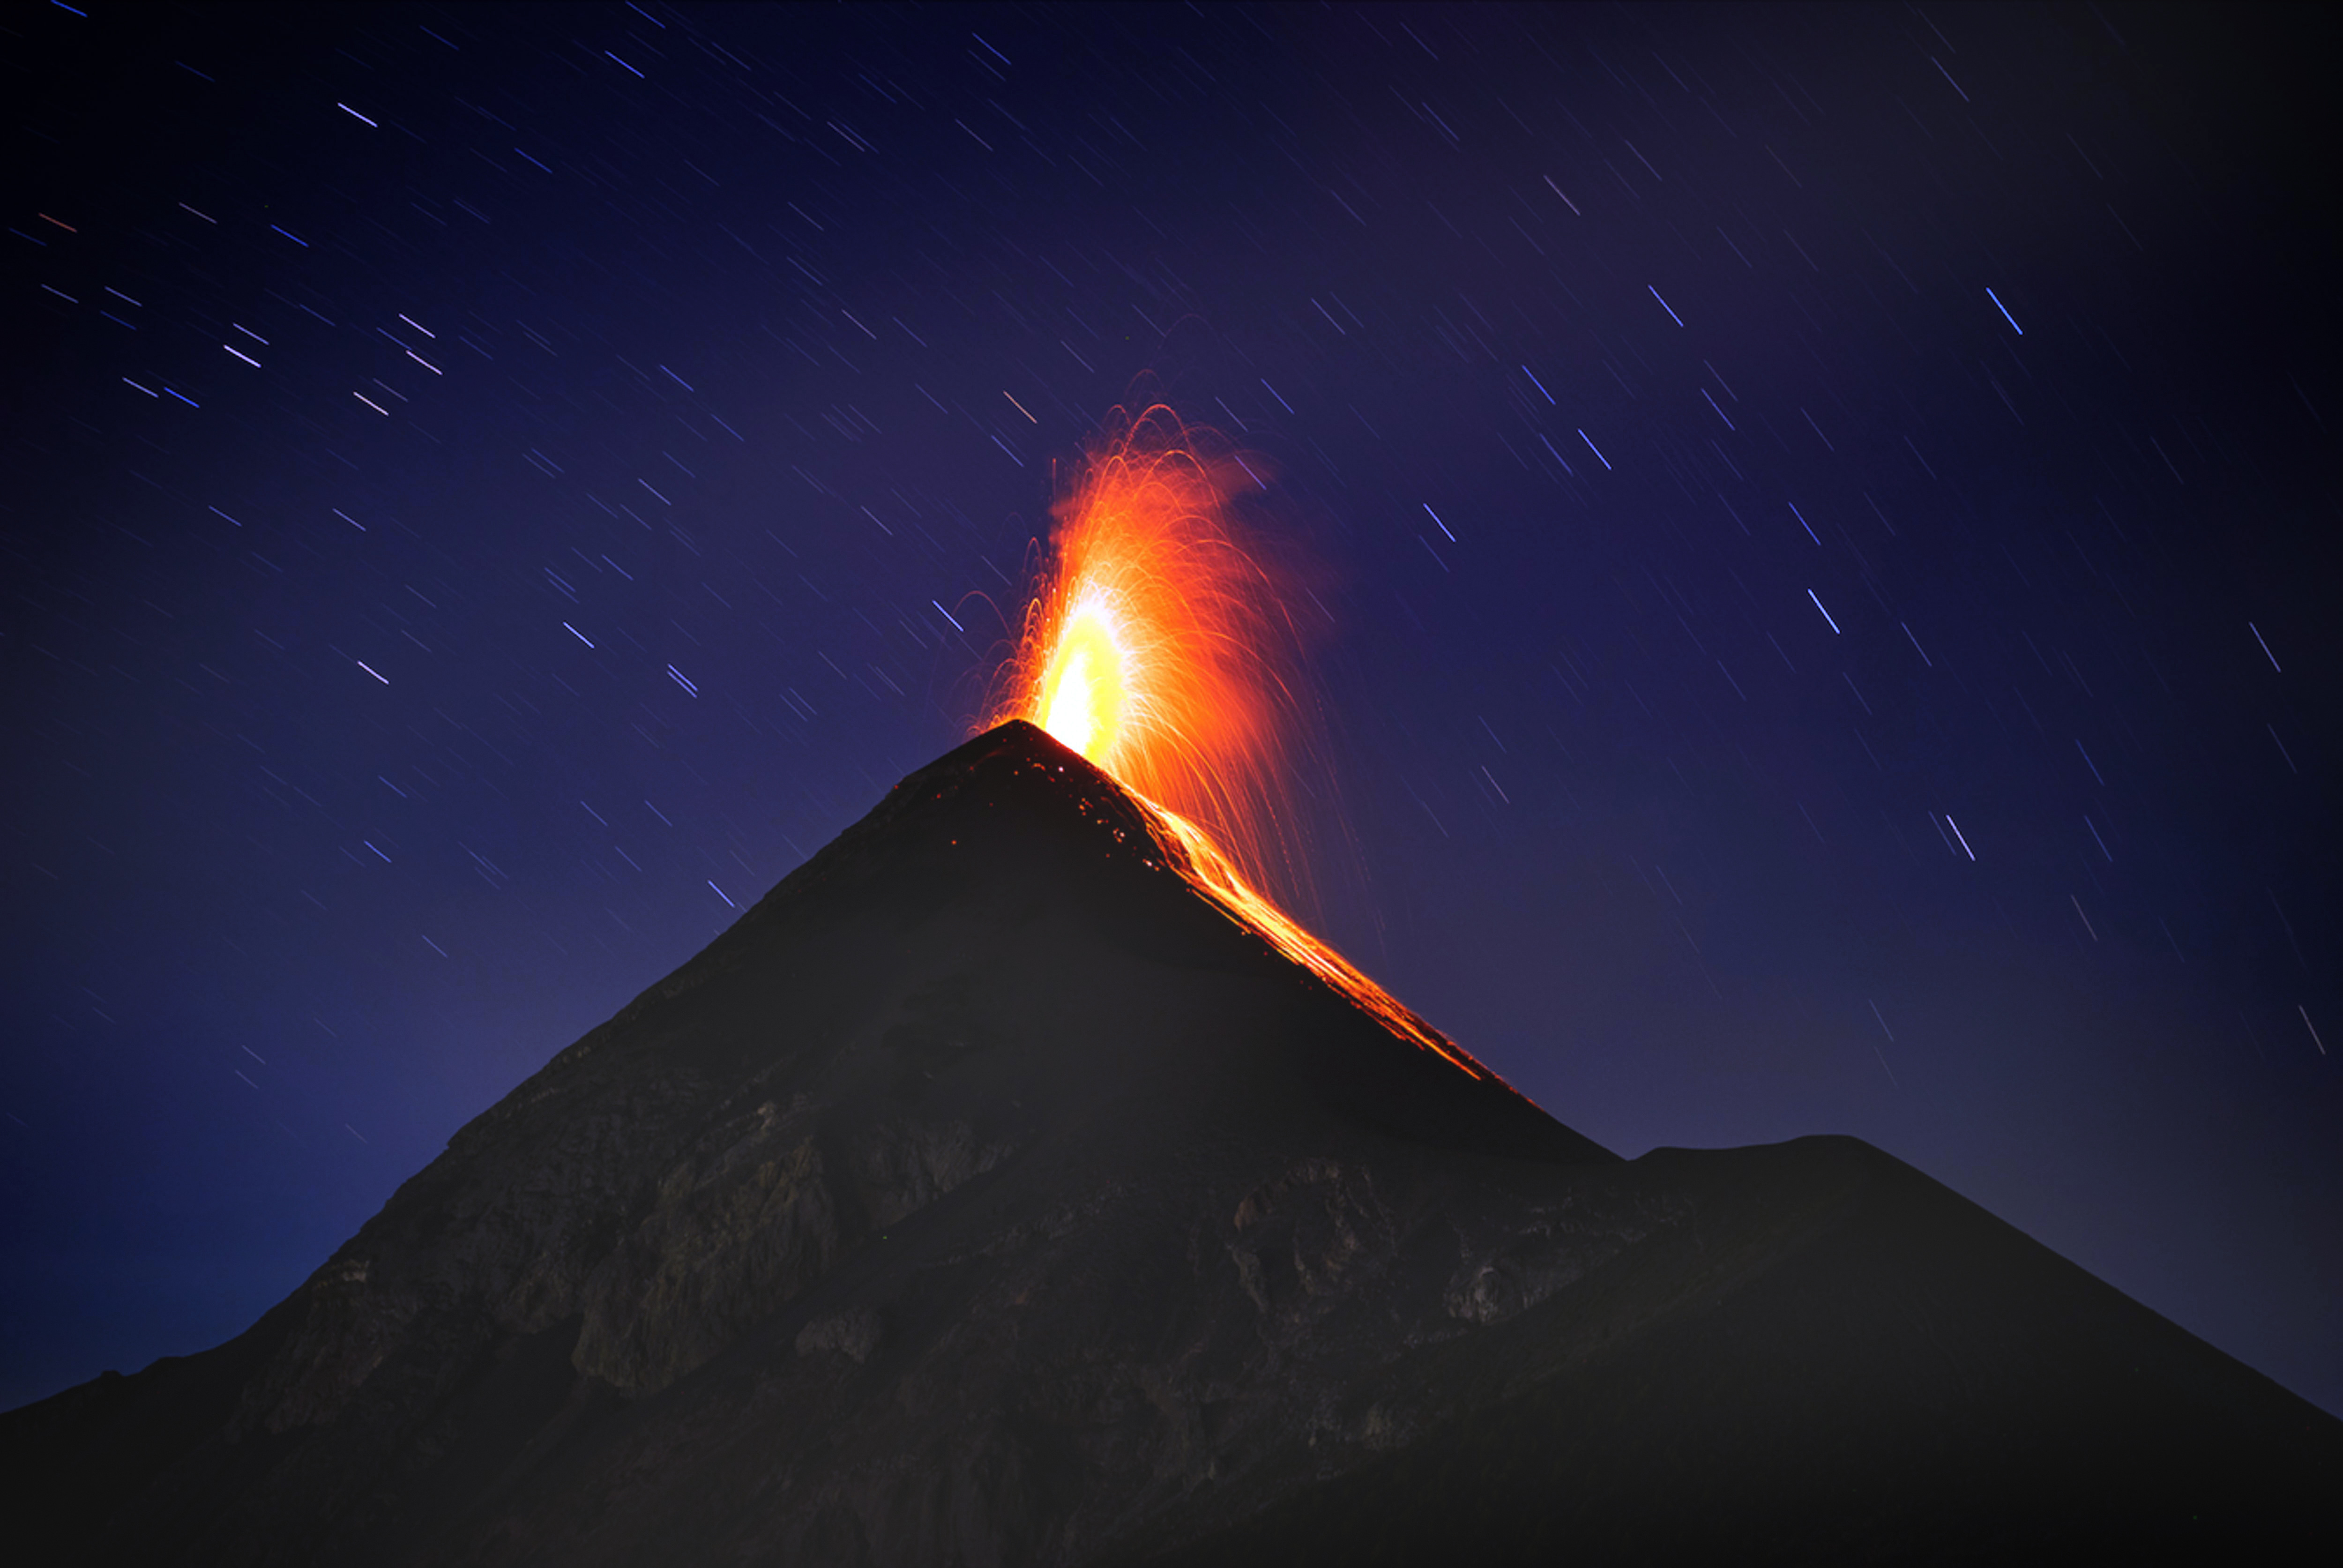 他在危地马富埃戈火山的山顶附近露营,在离火山口只有100米远的地方